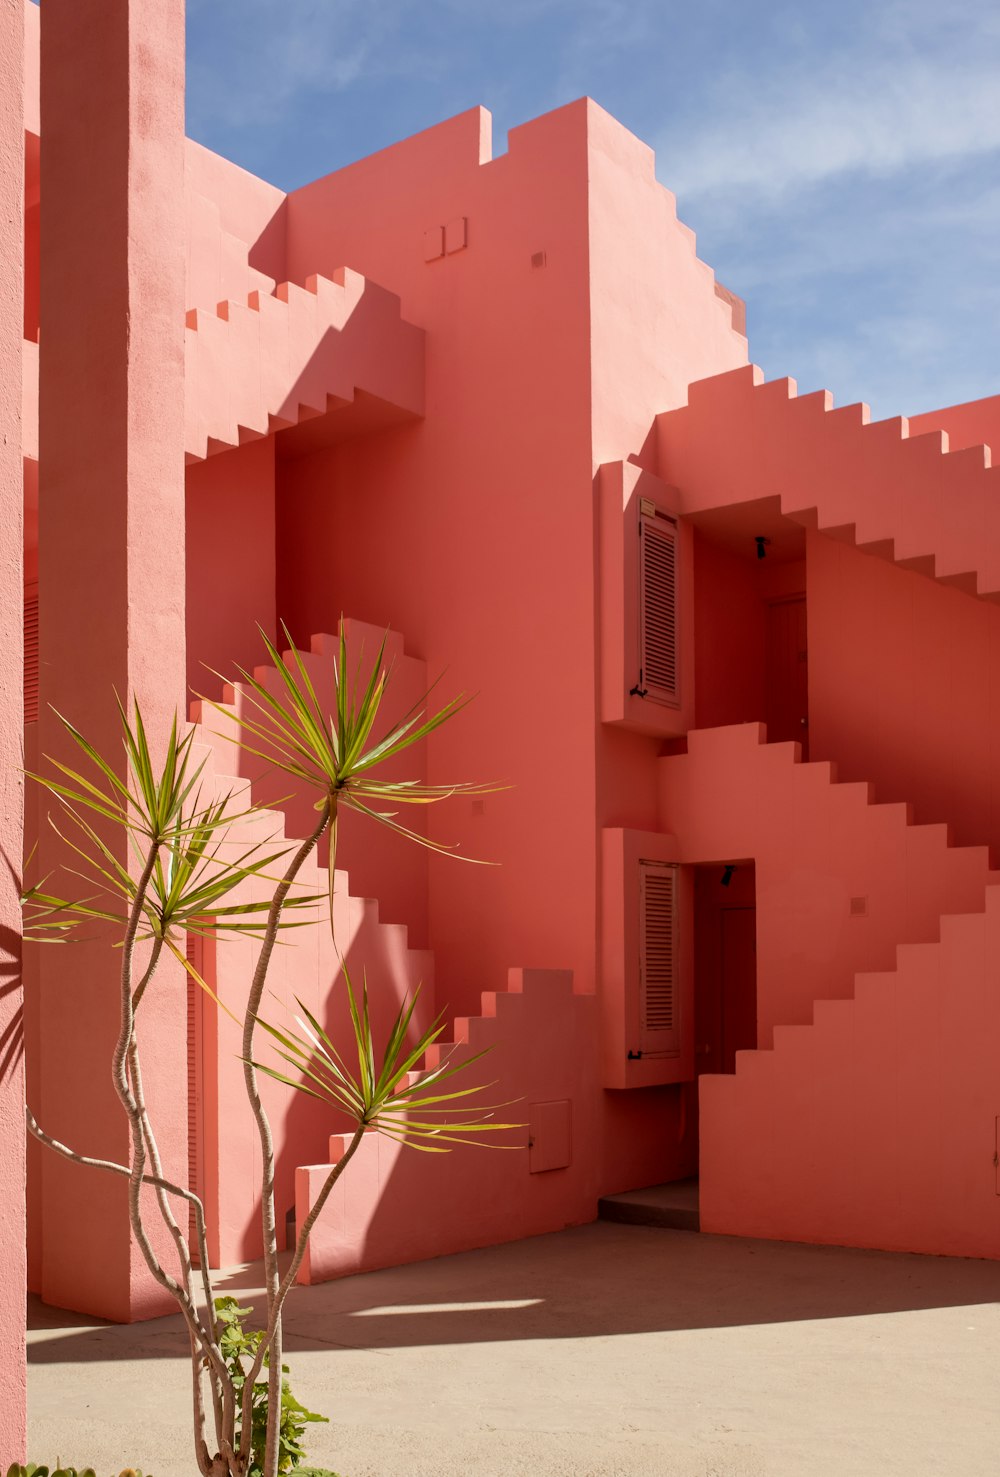 eine Pflanze in einem Topf vor einem rosafarbenen Gebäude